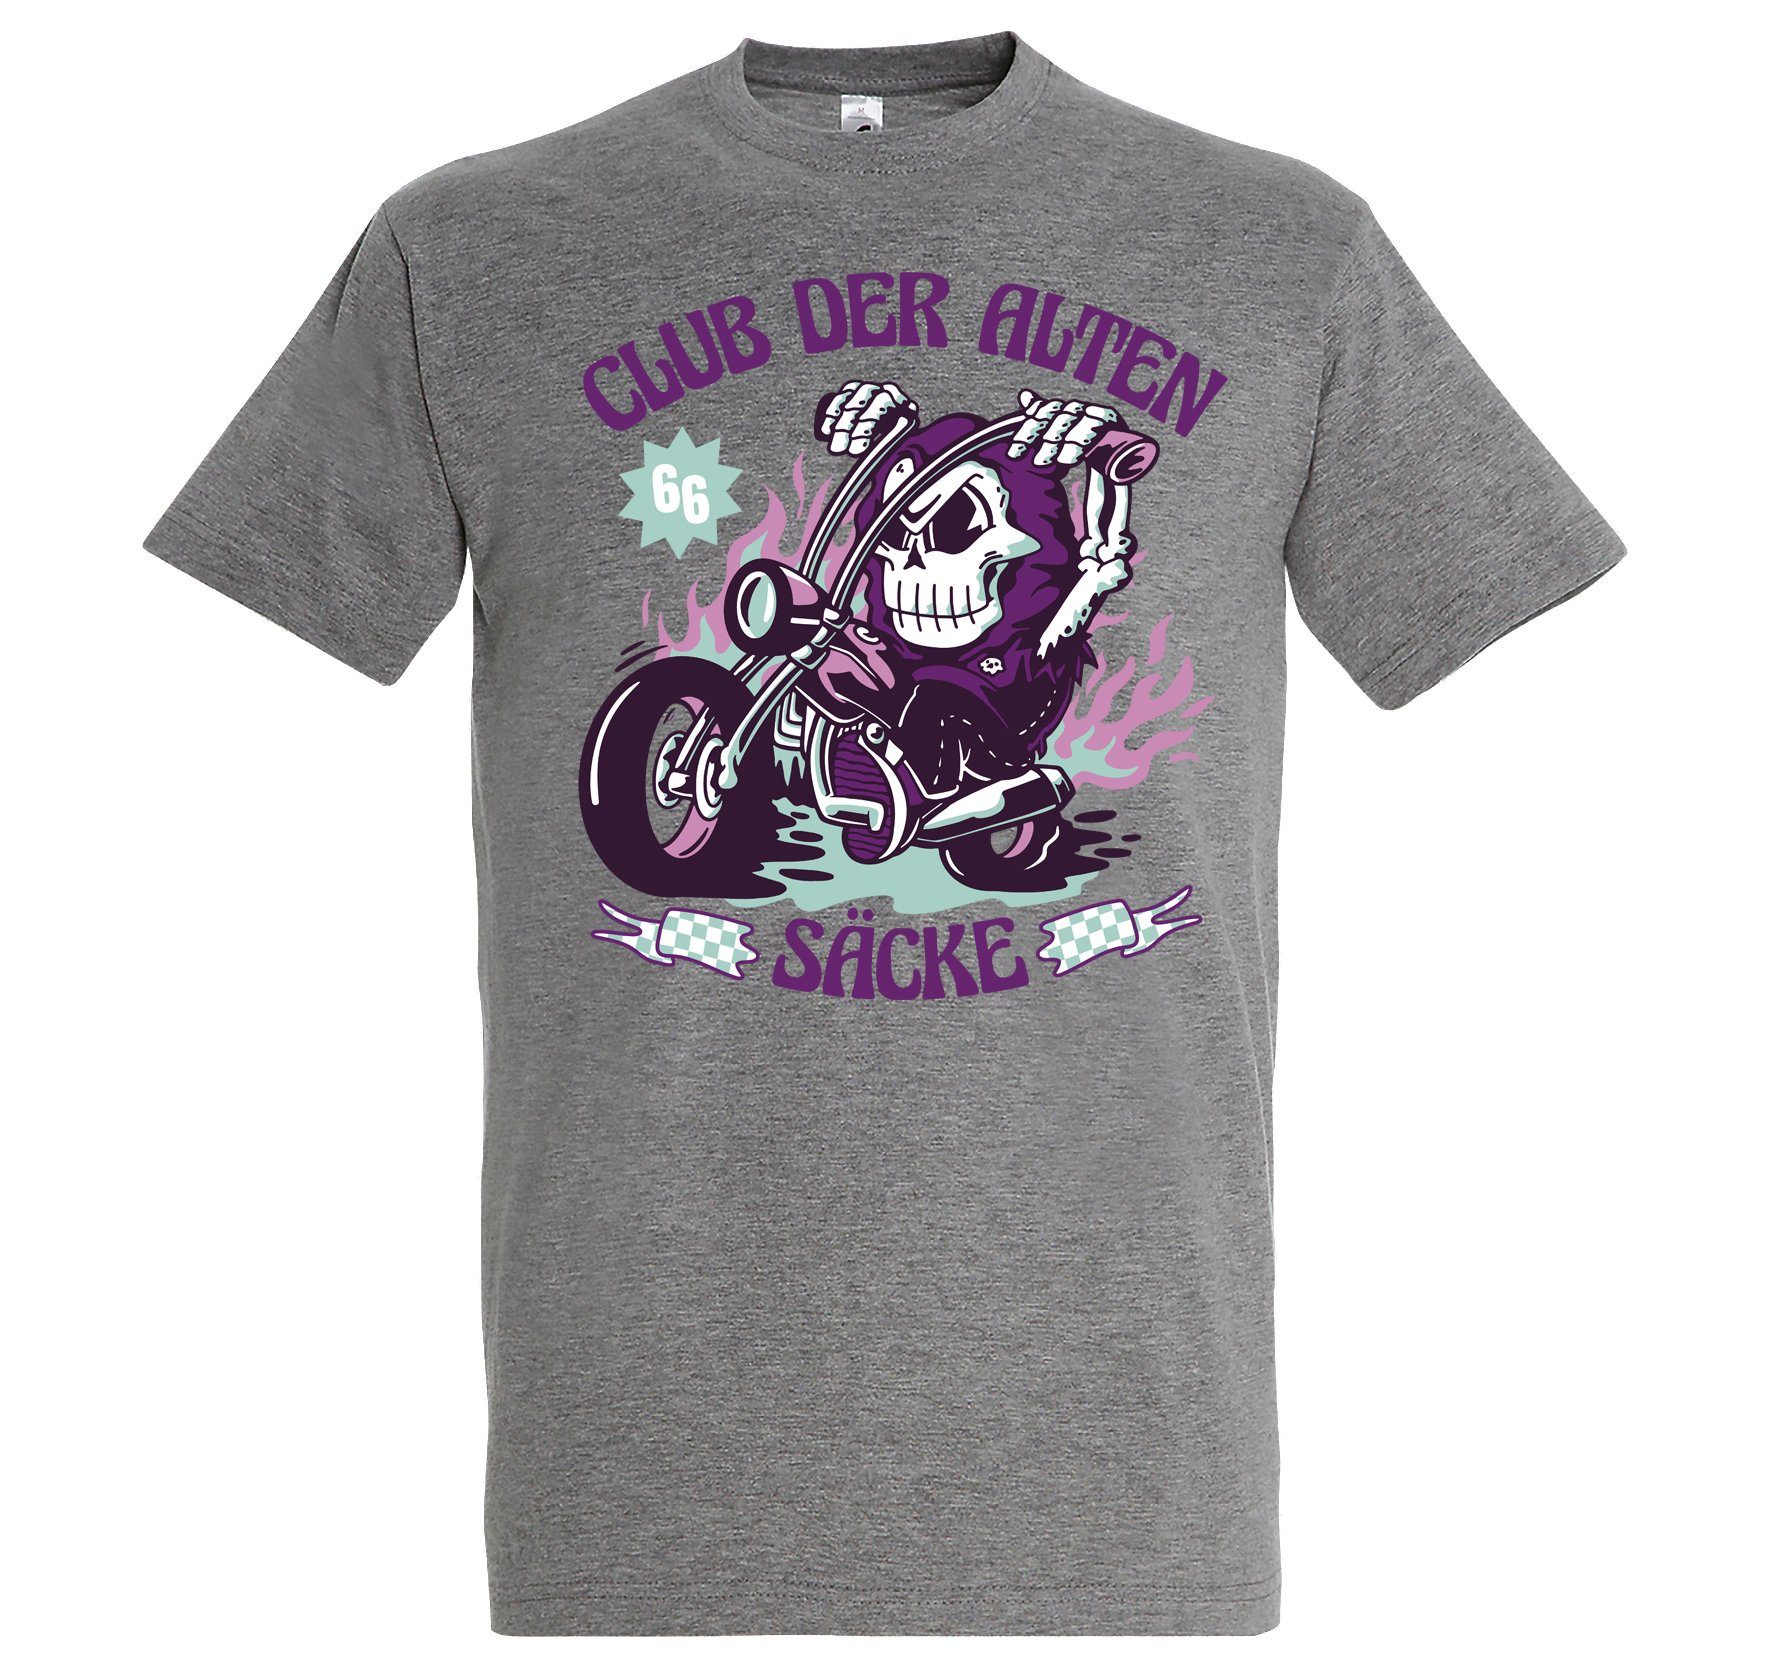 T-Shirt Alten Shirt Herren Der Youth mit Designz lustigem Säcke Grau Club Frontprint Biker